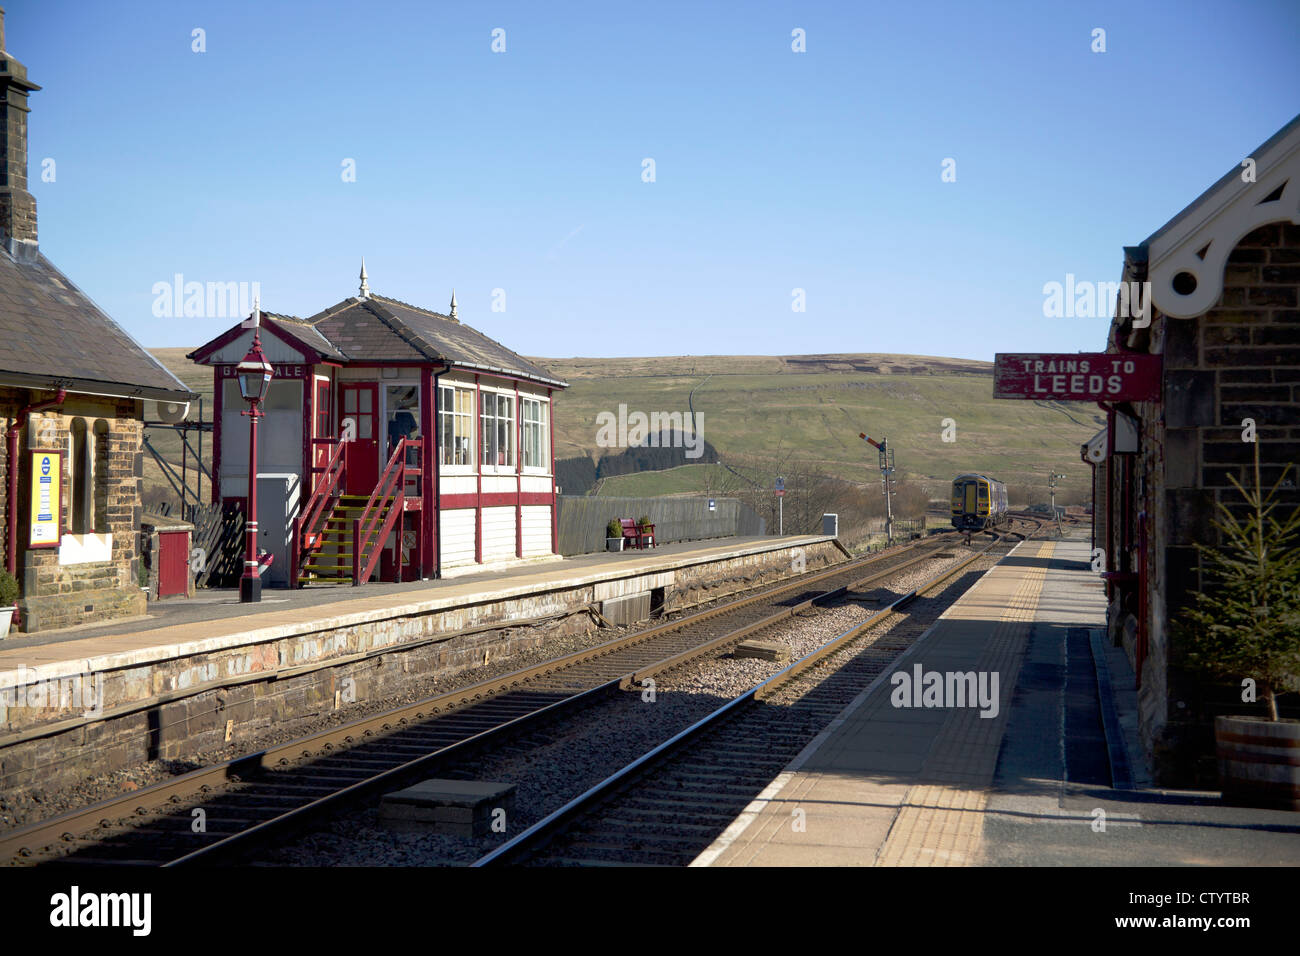 Nord del convoglio ferroviario passando Garsdale stazione ferroviaria sul famoso arrivino a Carlisle, ferroviaria Garsdale, Cumbria, Inghilterra. Foto Stock